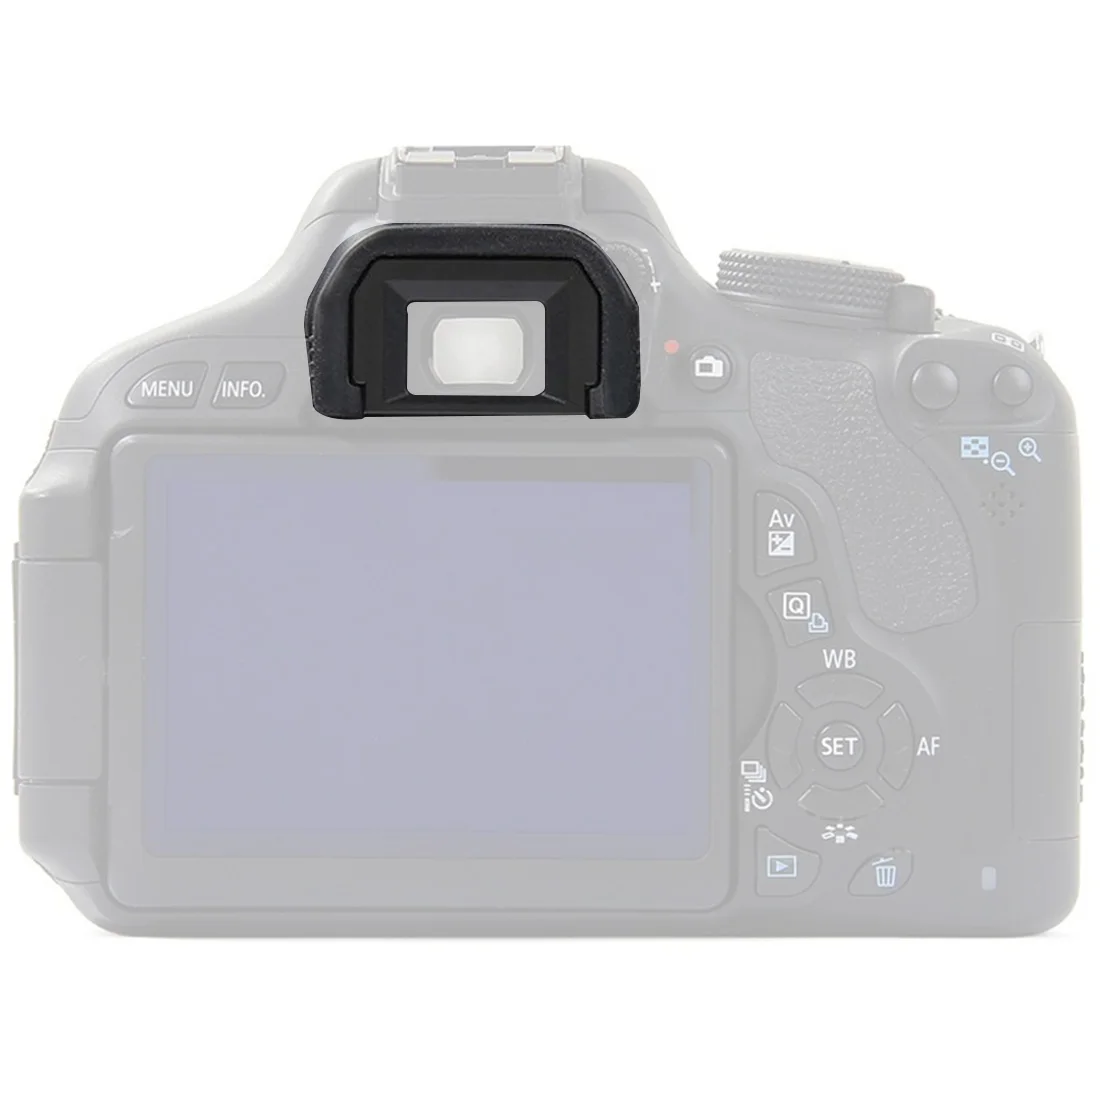 

Резиновые наглазник окуляра камеры глаза патч очки EF для Canon 650D 500D 1100D DK-21 25 для Nikon D7000 D90 D600 D5500 D5600 D550